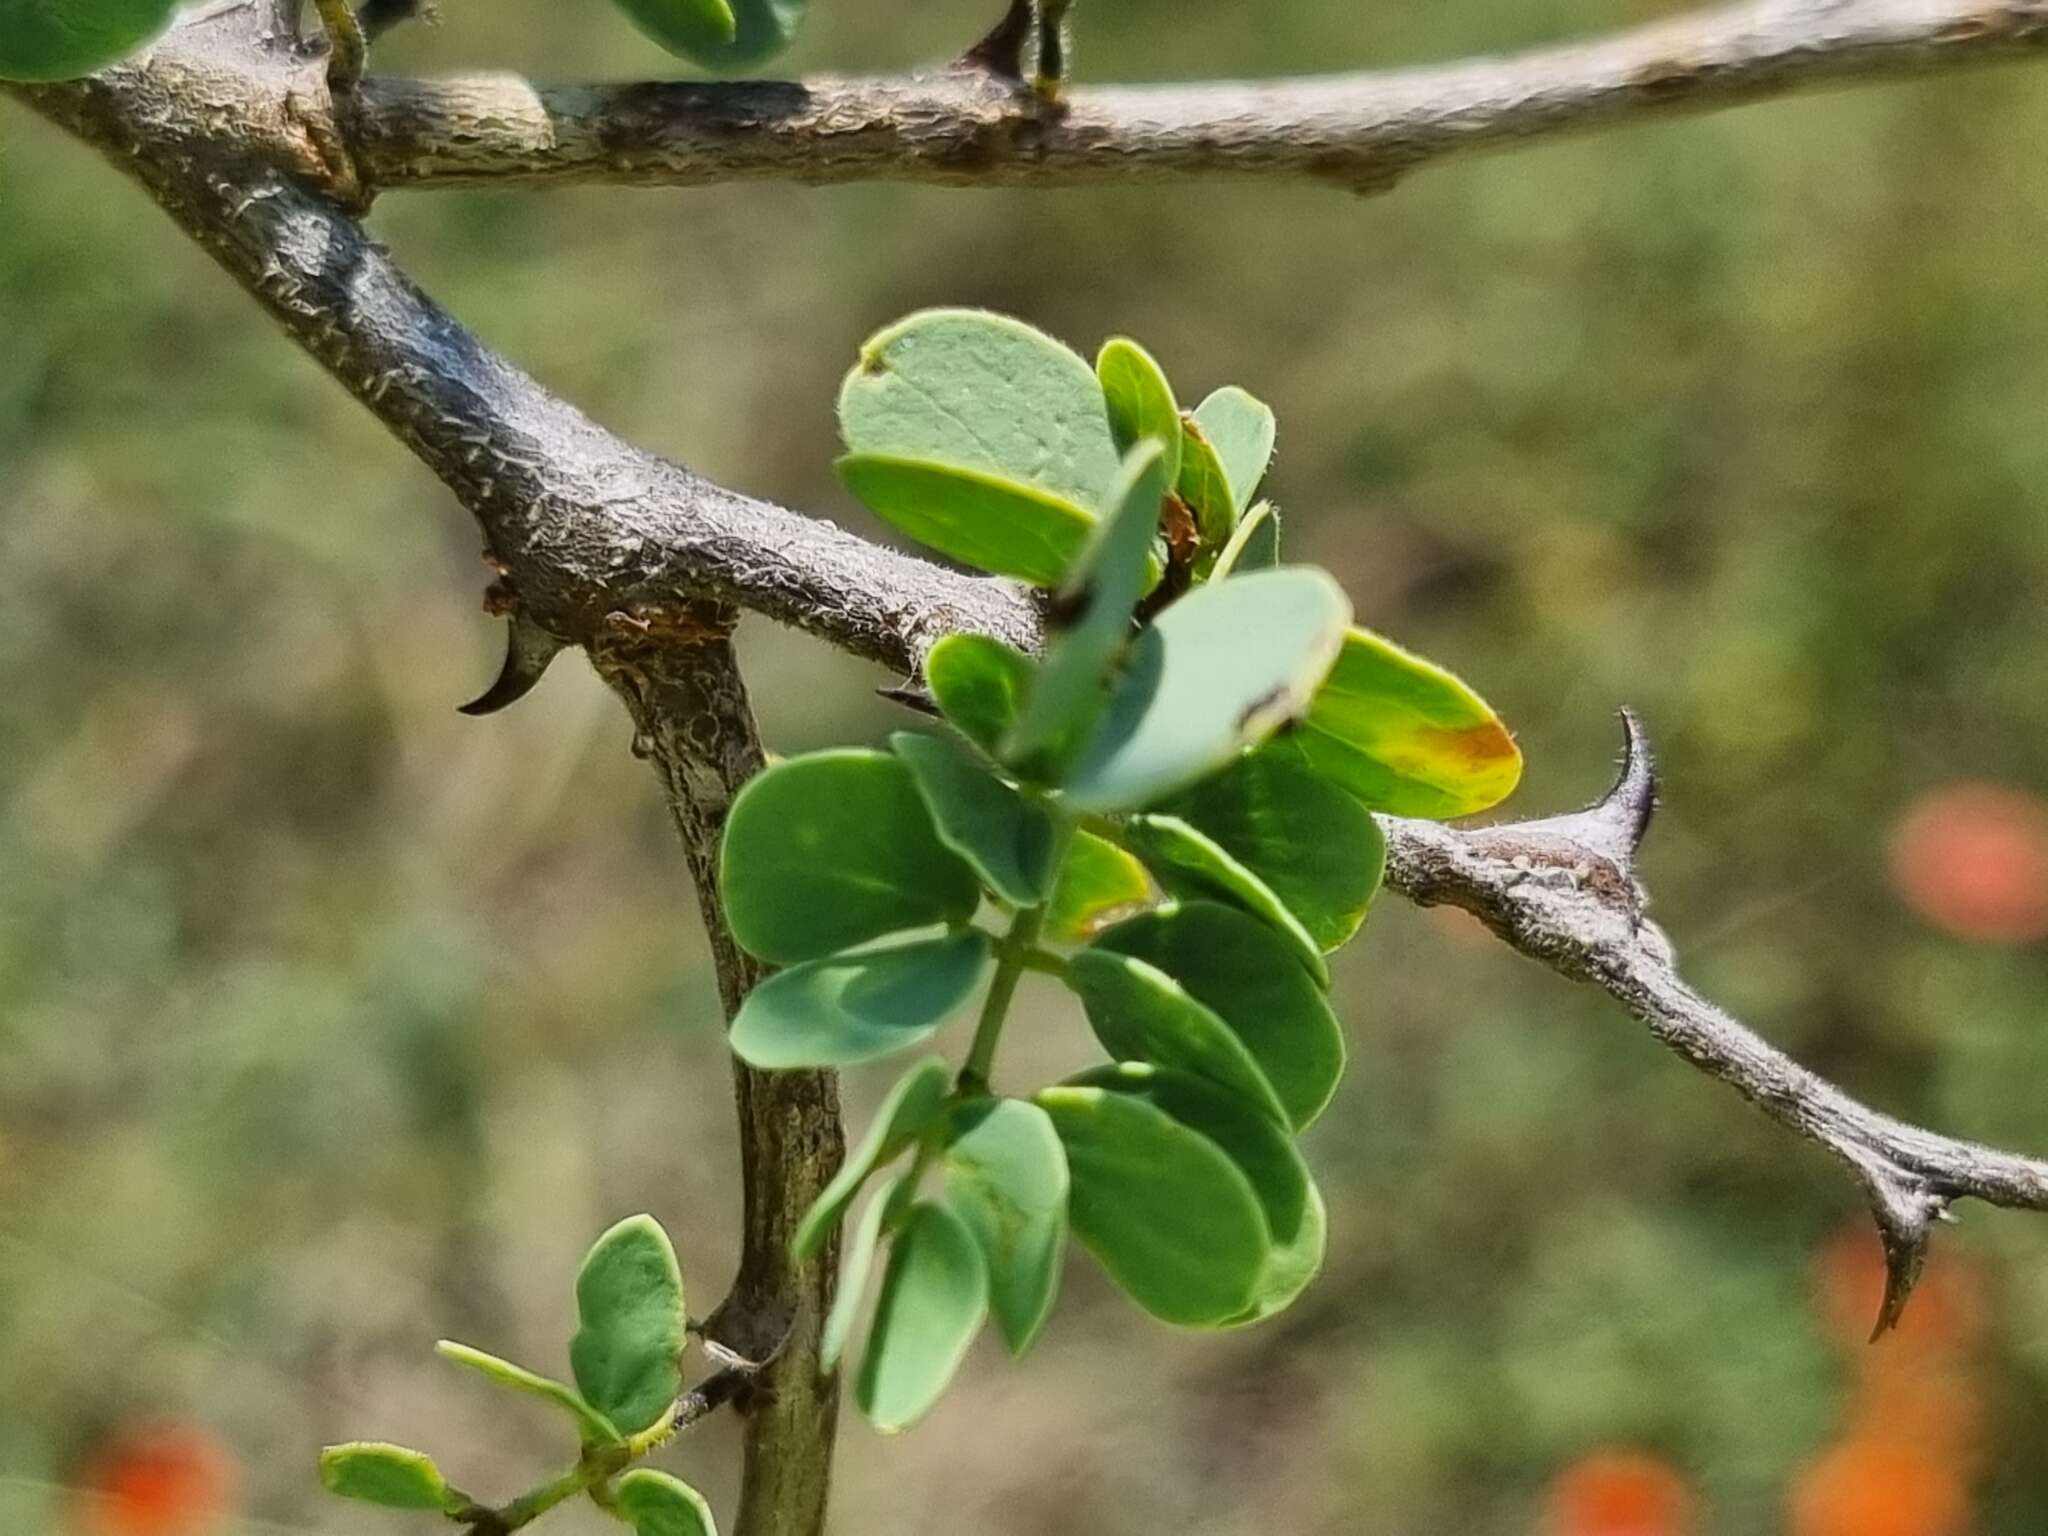 Sivun Senegalia mellifera (Vahl) Seigler & Ebinger kuva